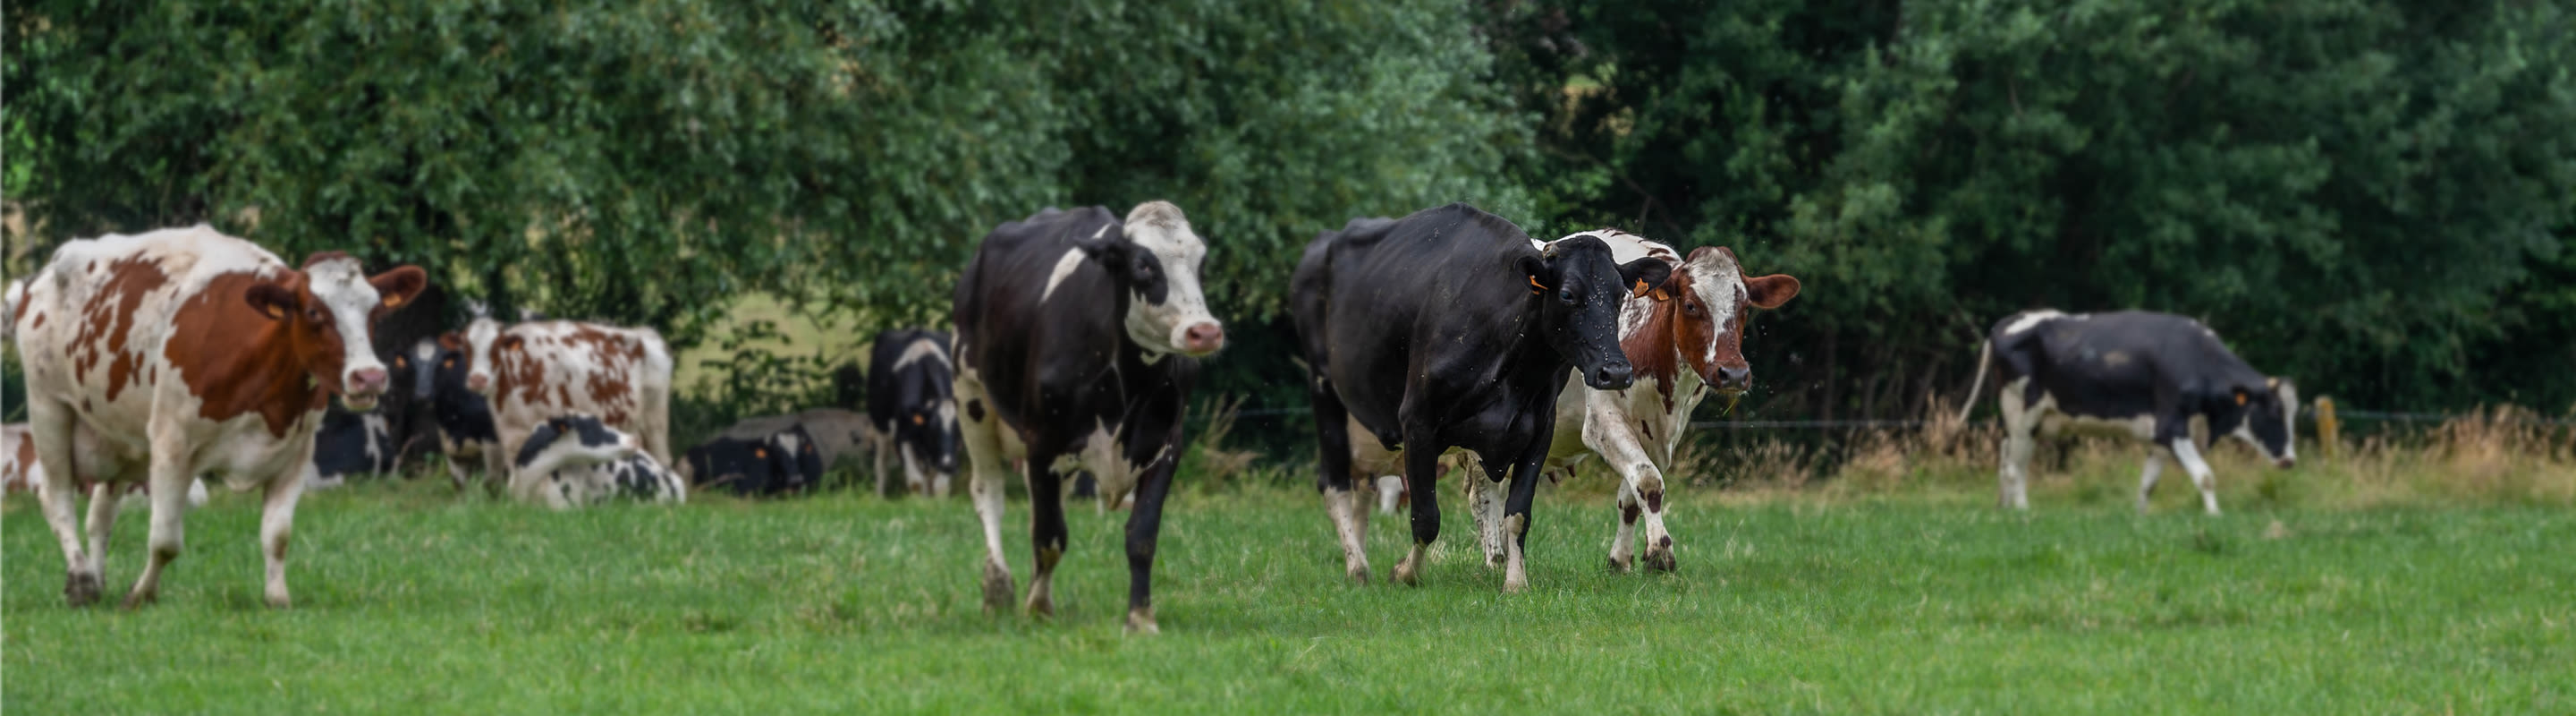 vaches en pâturage recevant des aliments biologiques